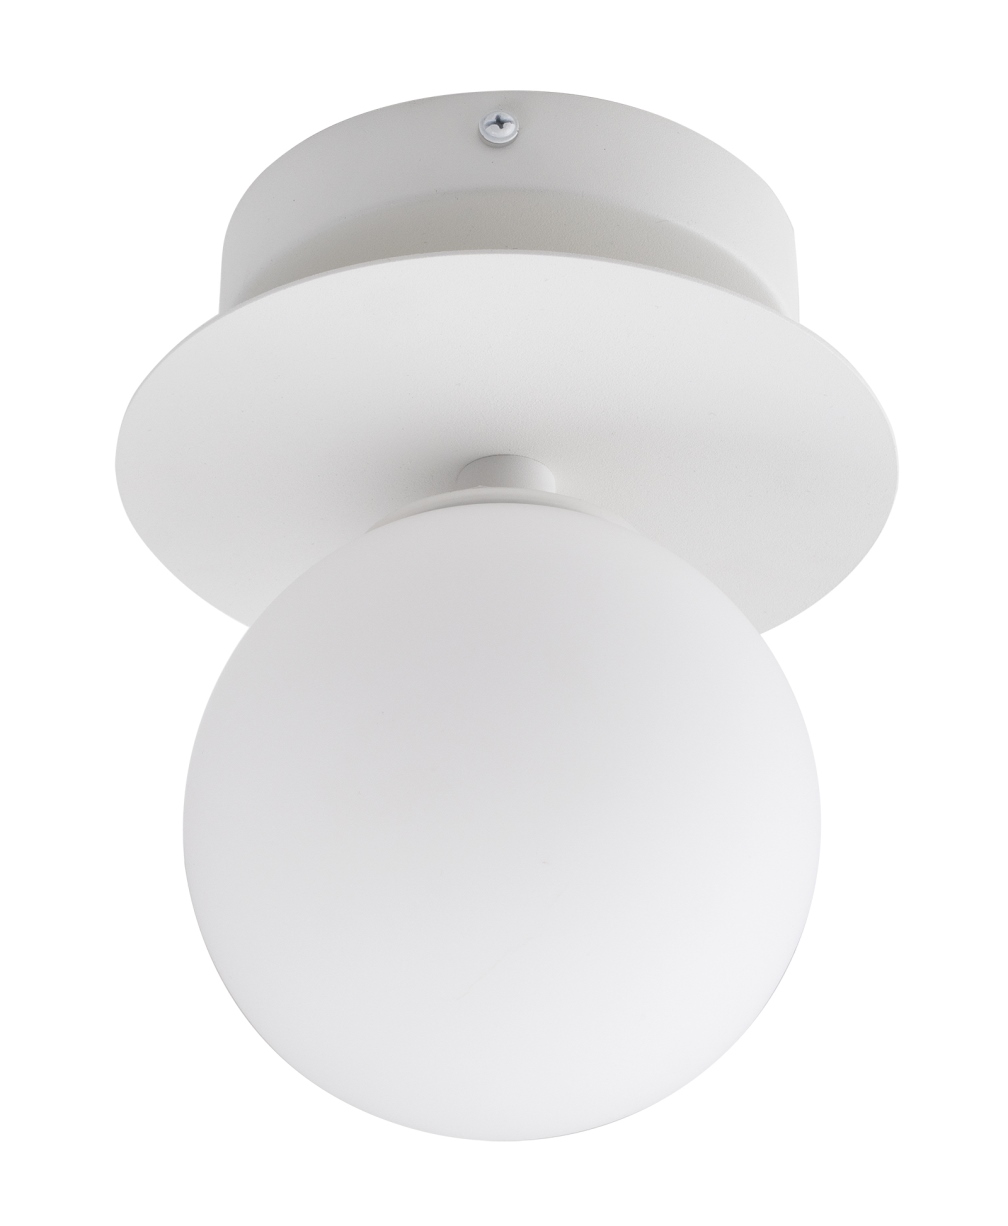 Globen Lighting Art Deco 24 Vägglampa/Plafond IP44 Vit